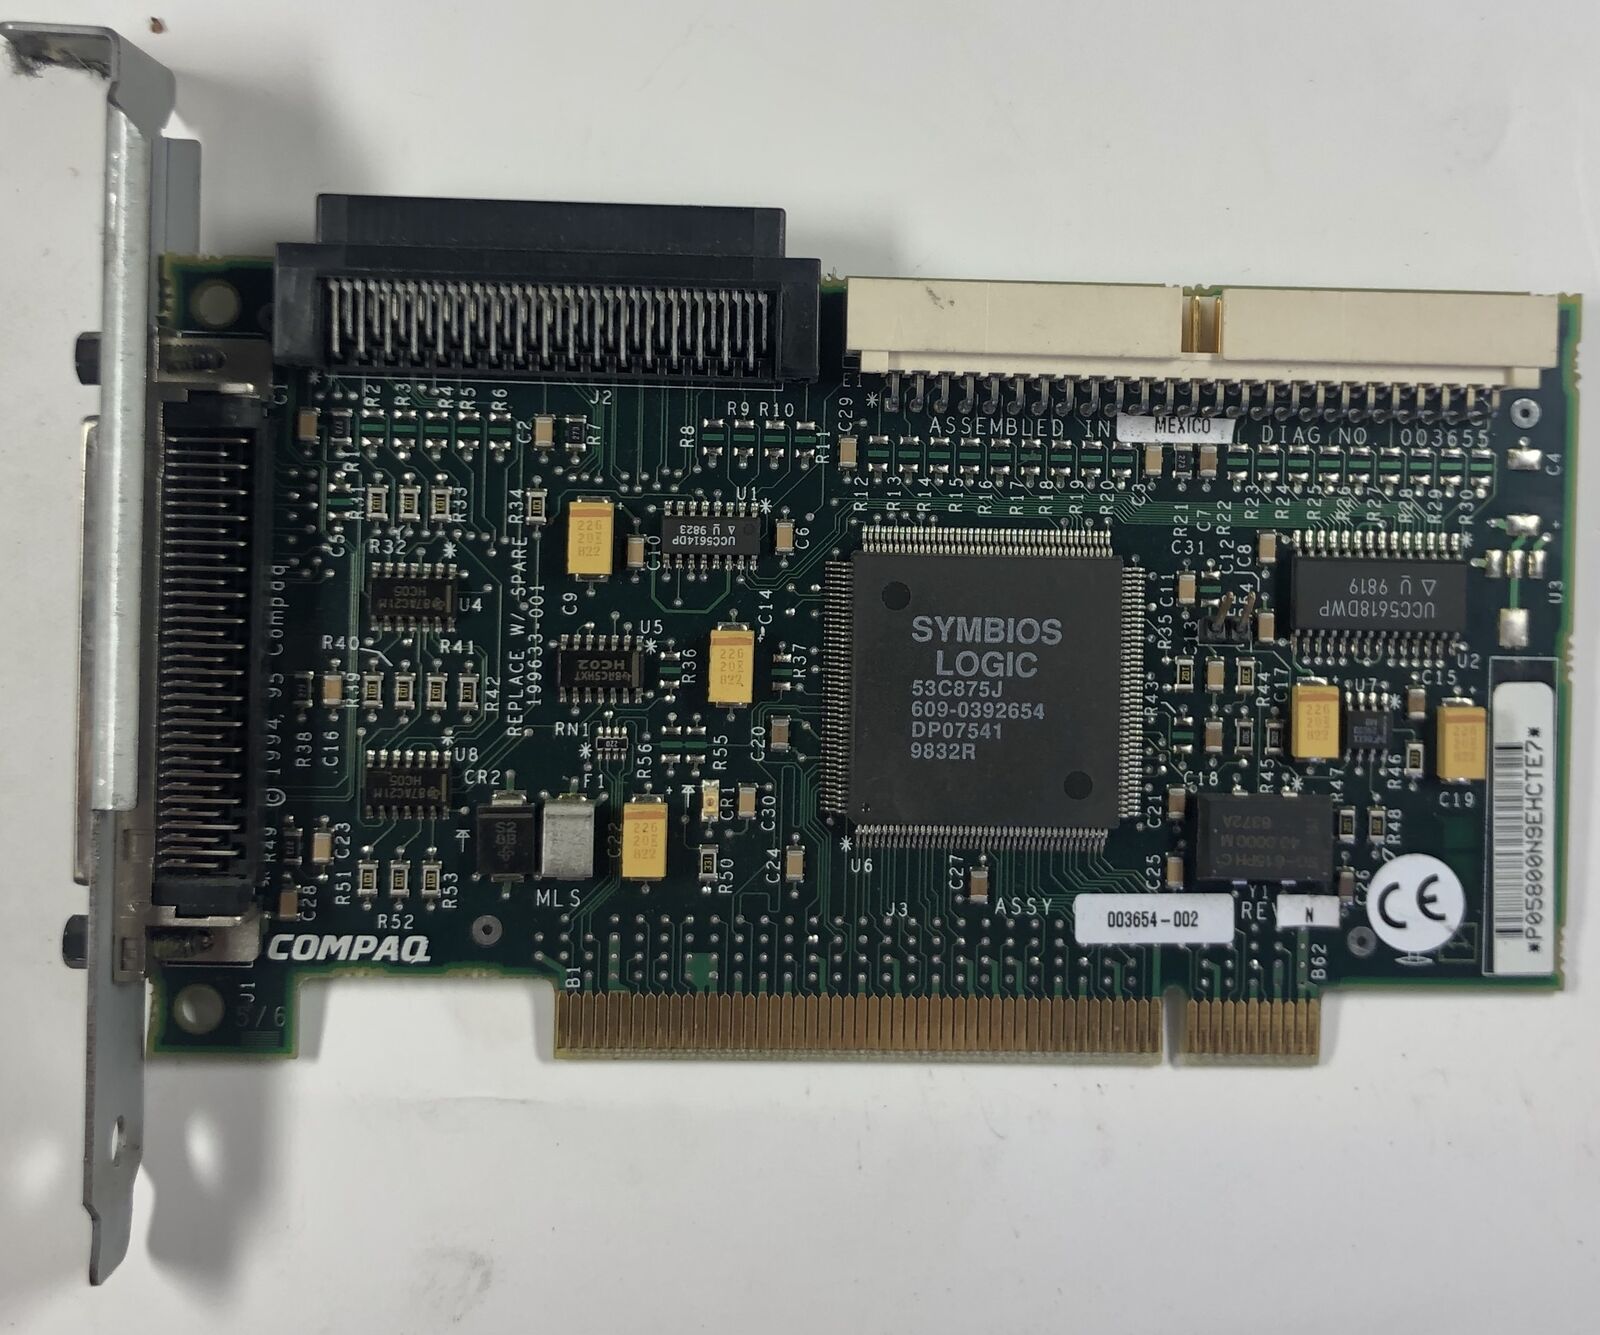 Compaq Prosignia 200 Server 32-Bit PCI SCSI CSI-2/P Controller Card- 199633-001